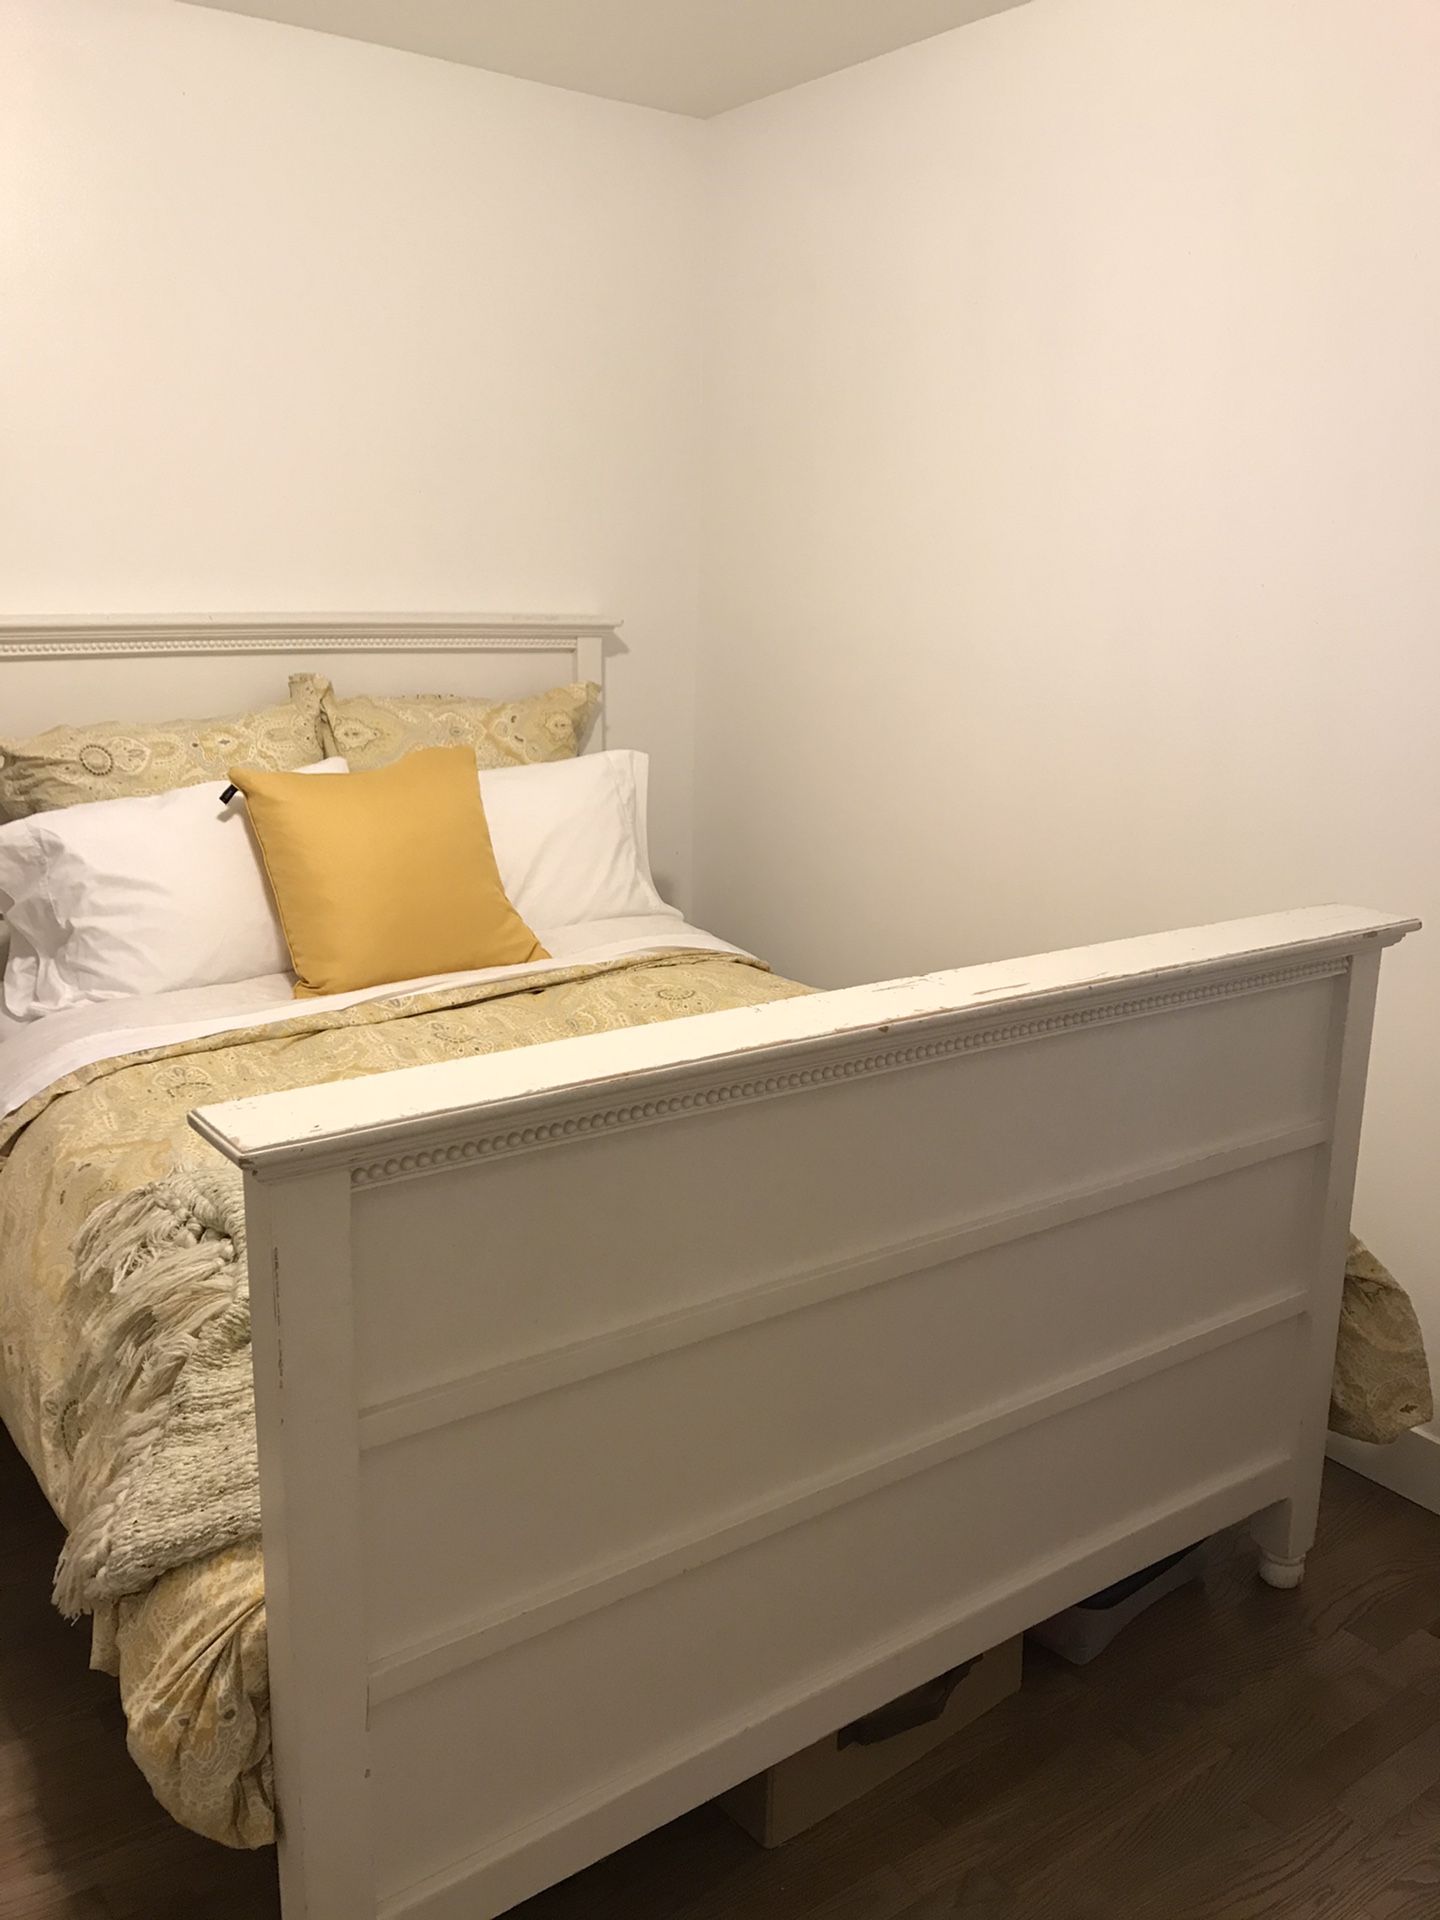 White full size bed frame